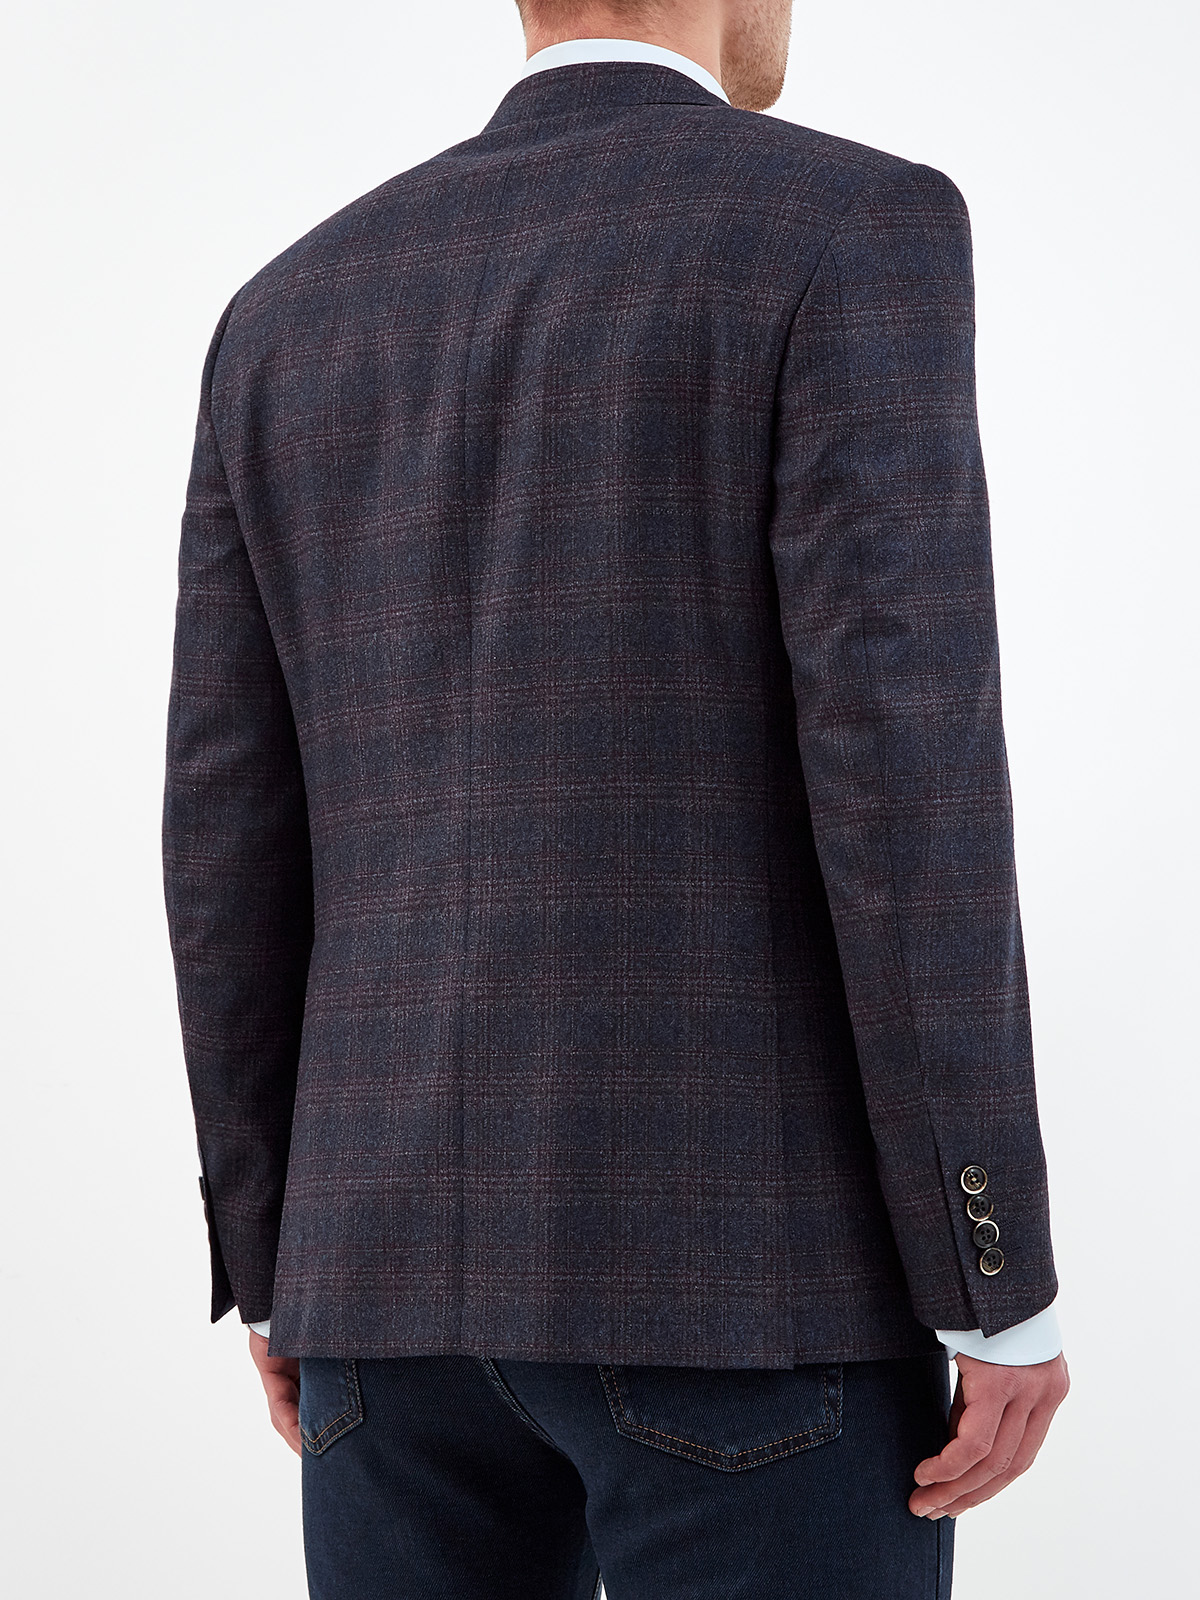 Классический пиджак ручной работы из шерсти в клетку CANALI, цвет синий, размер 50;54;56 - фото 4